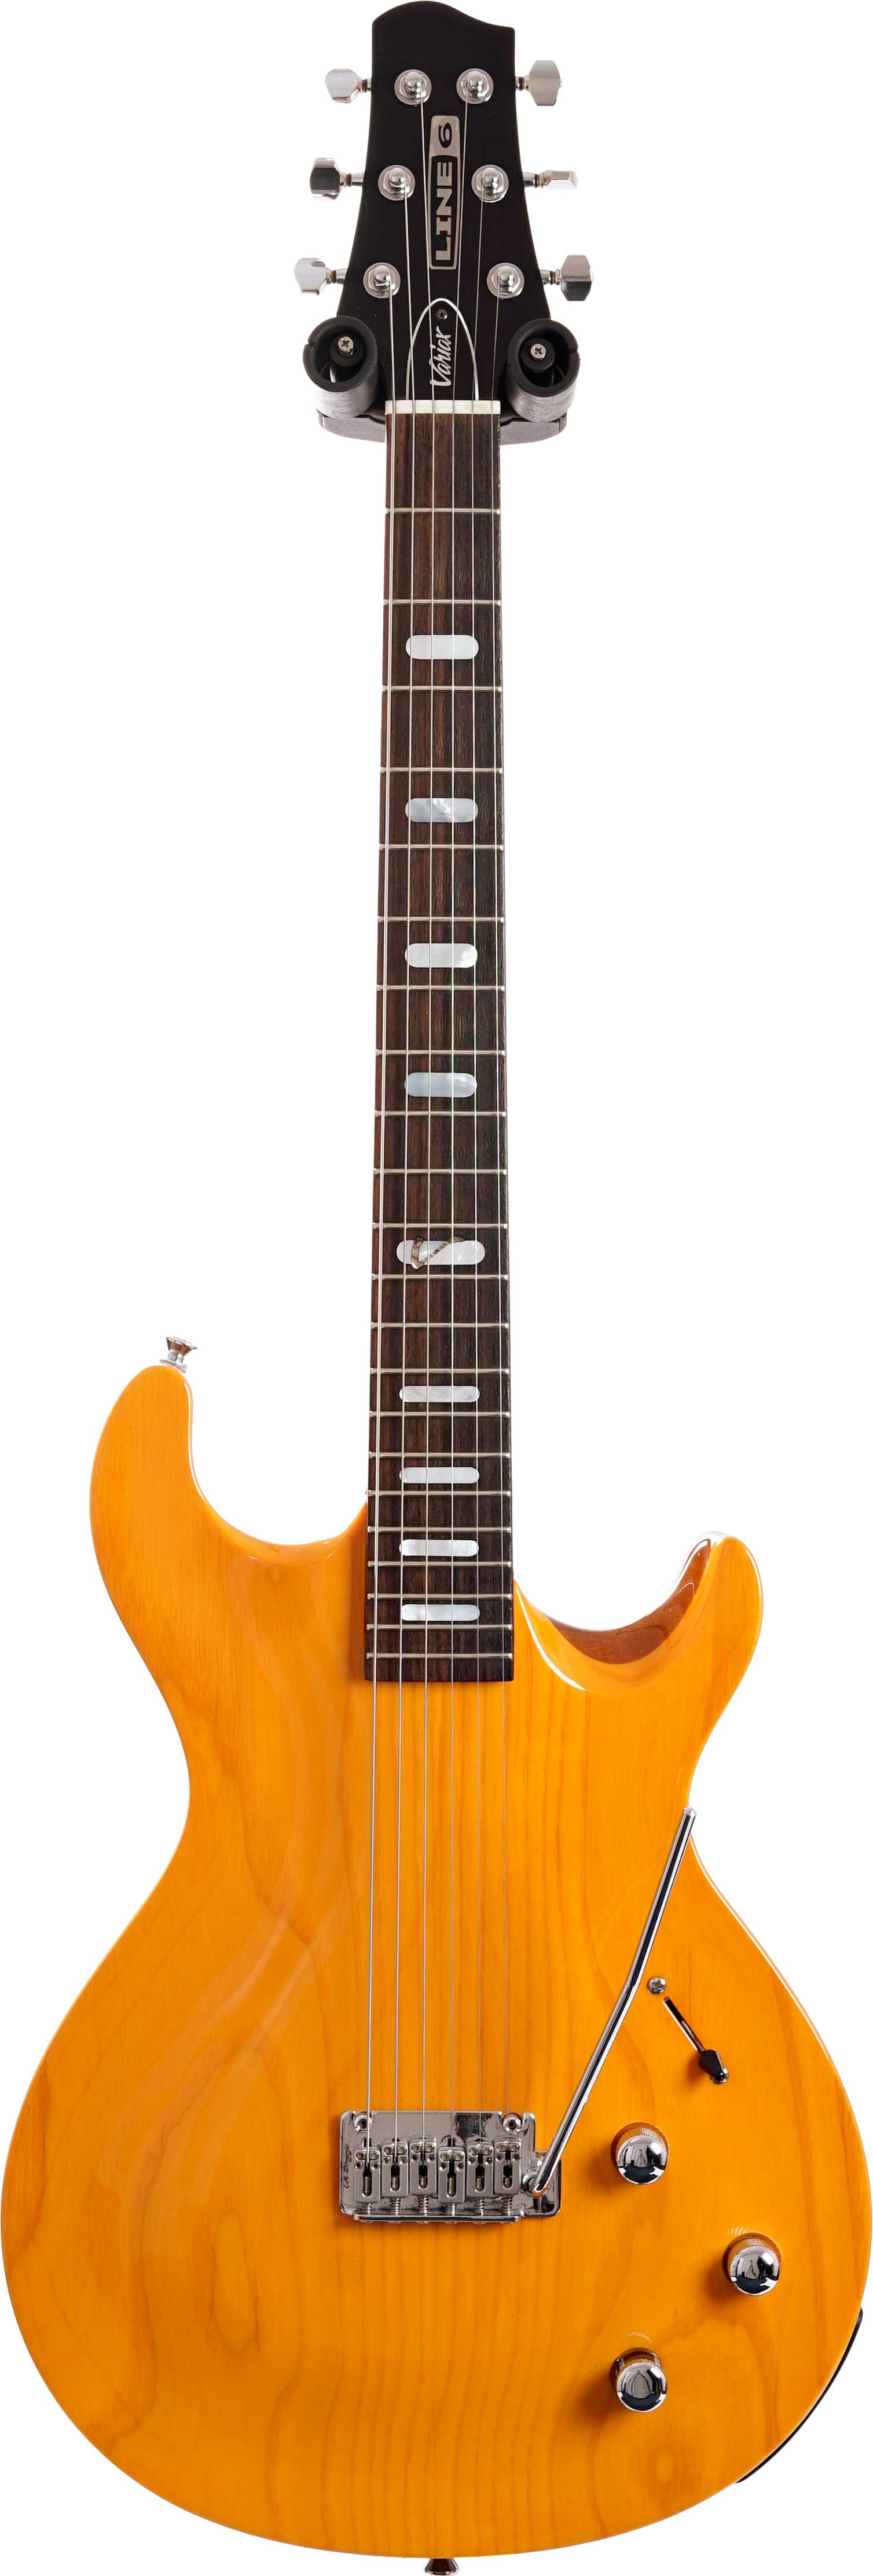 法人特価LINE6 Variax700 フジゲン製 ギター